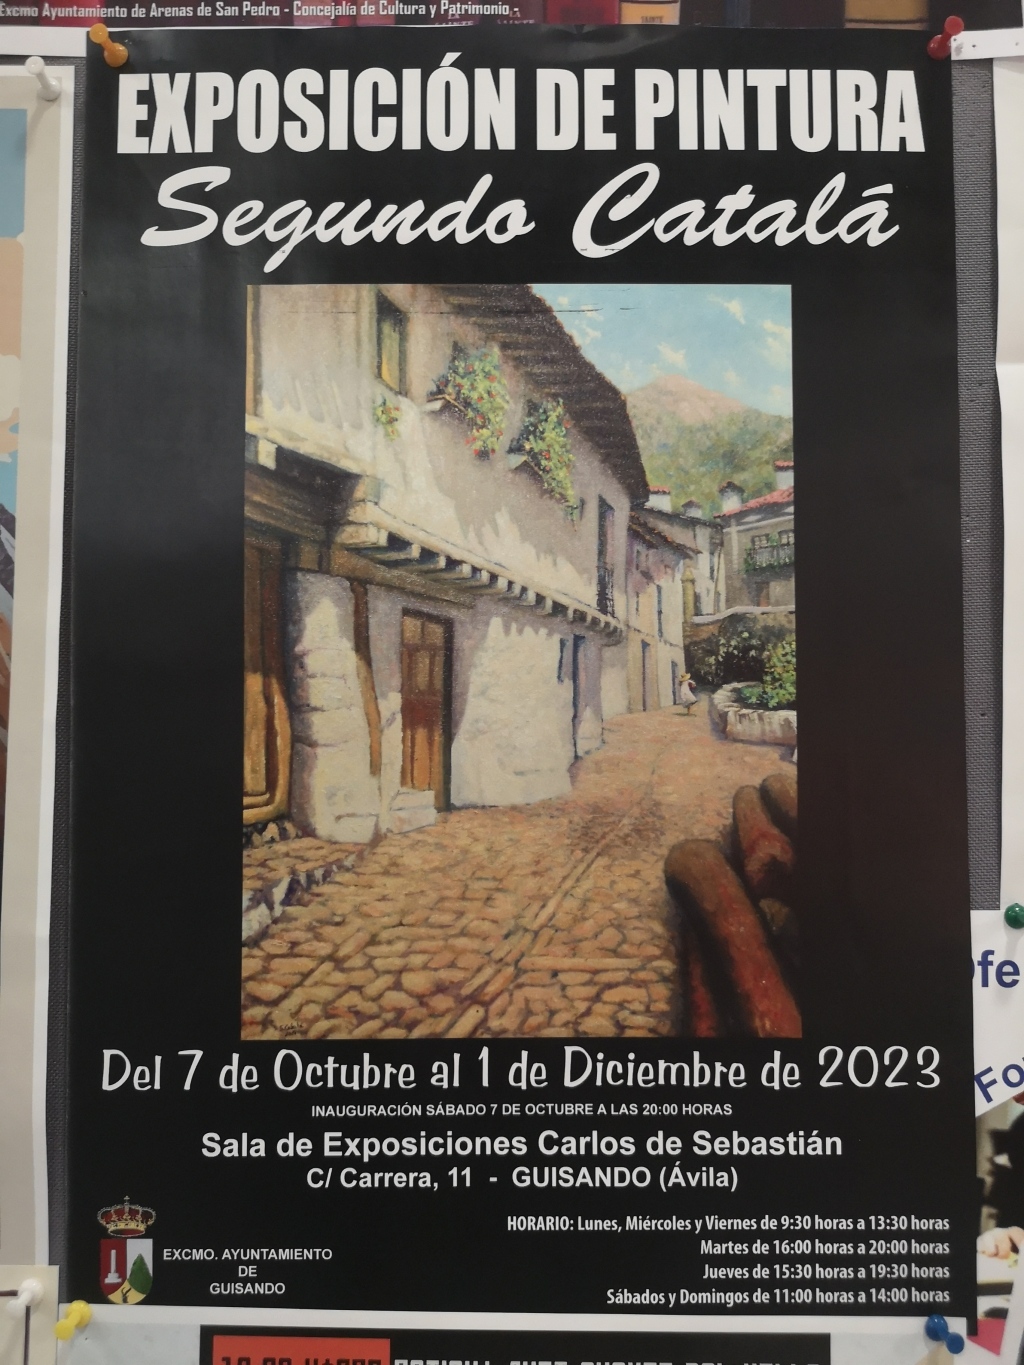 Exposición de Pintura de Segundo Catalá en Guisando